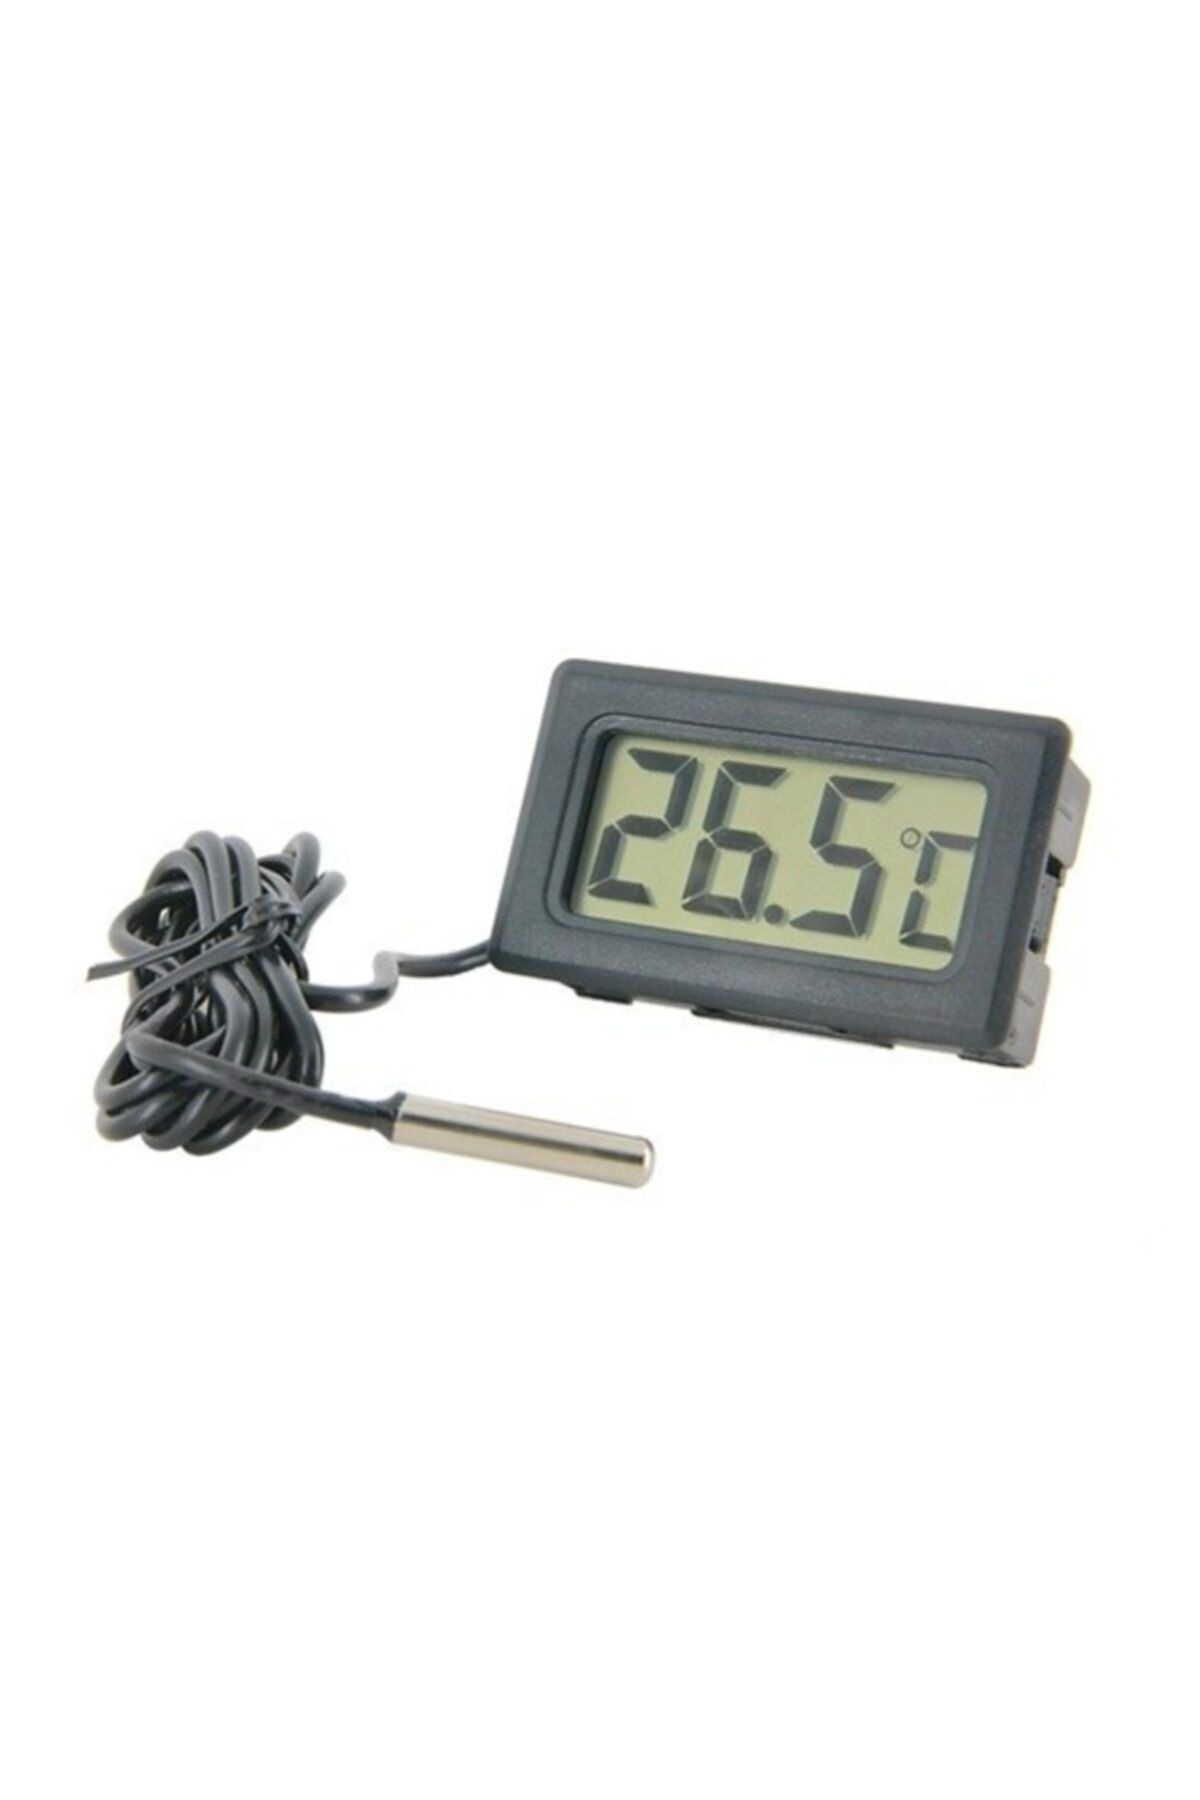 Genel Markalar Dijital Problu Termometre Lcd Mutfak Iç Dış Mekan Kuluçka Sıcaklık Ölçer Tpm 10 Tpm10